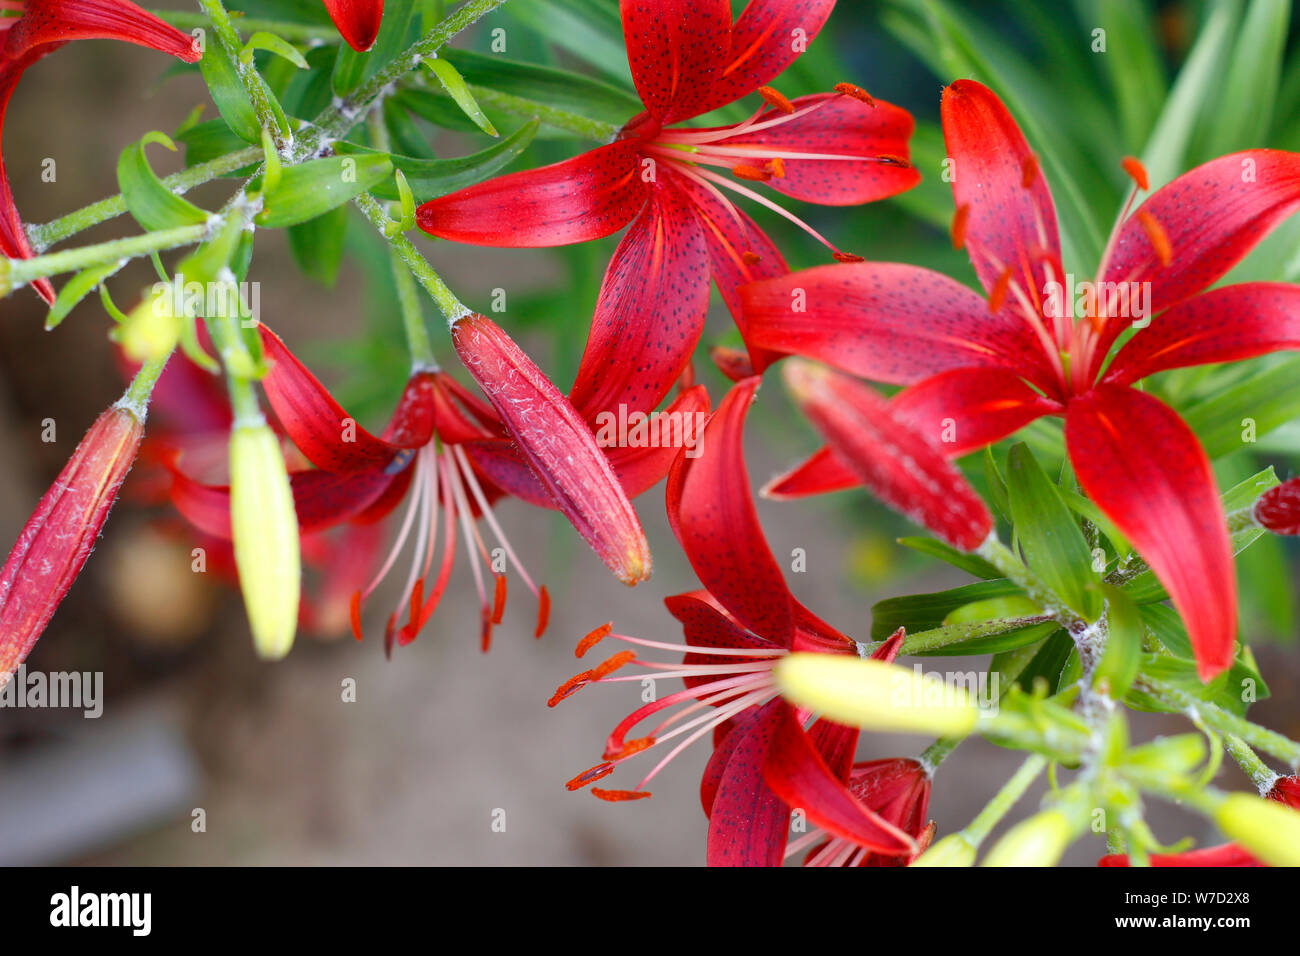 Scarlet Lilien close-up. Rote Lilien wachsen im Garten. Blühende Lilie Blume Lilium bulbiferum. Stockfoto